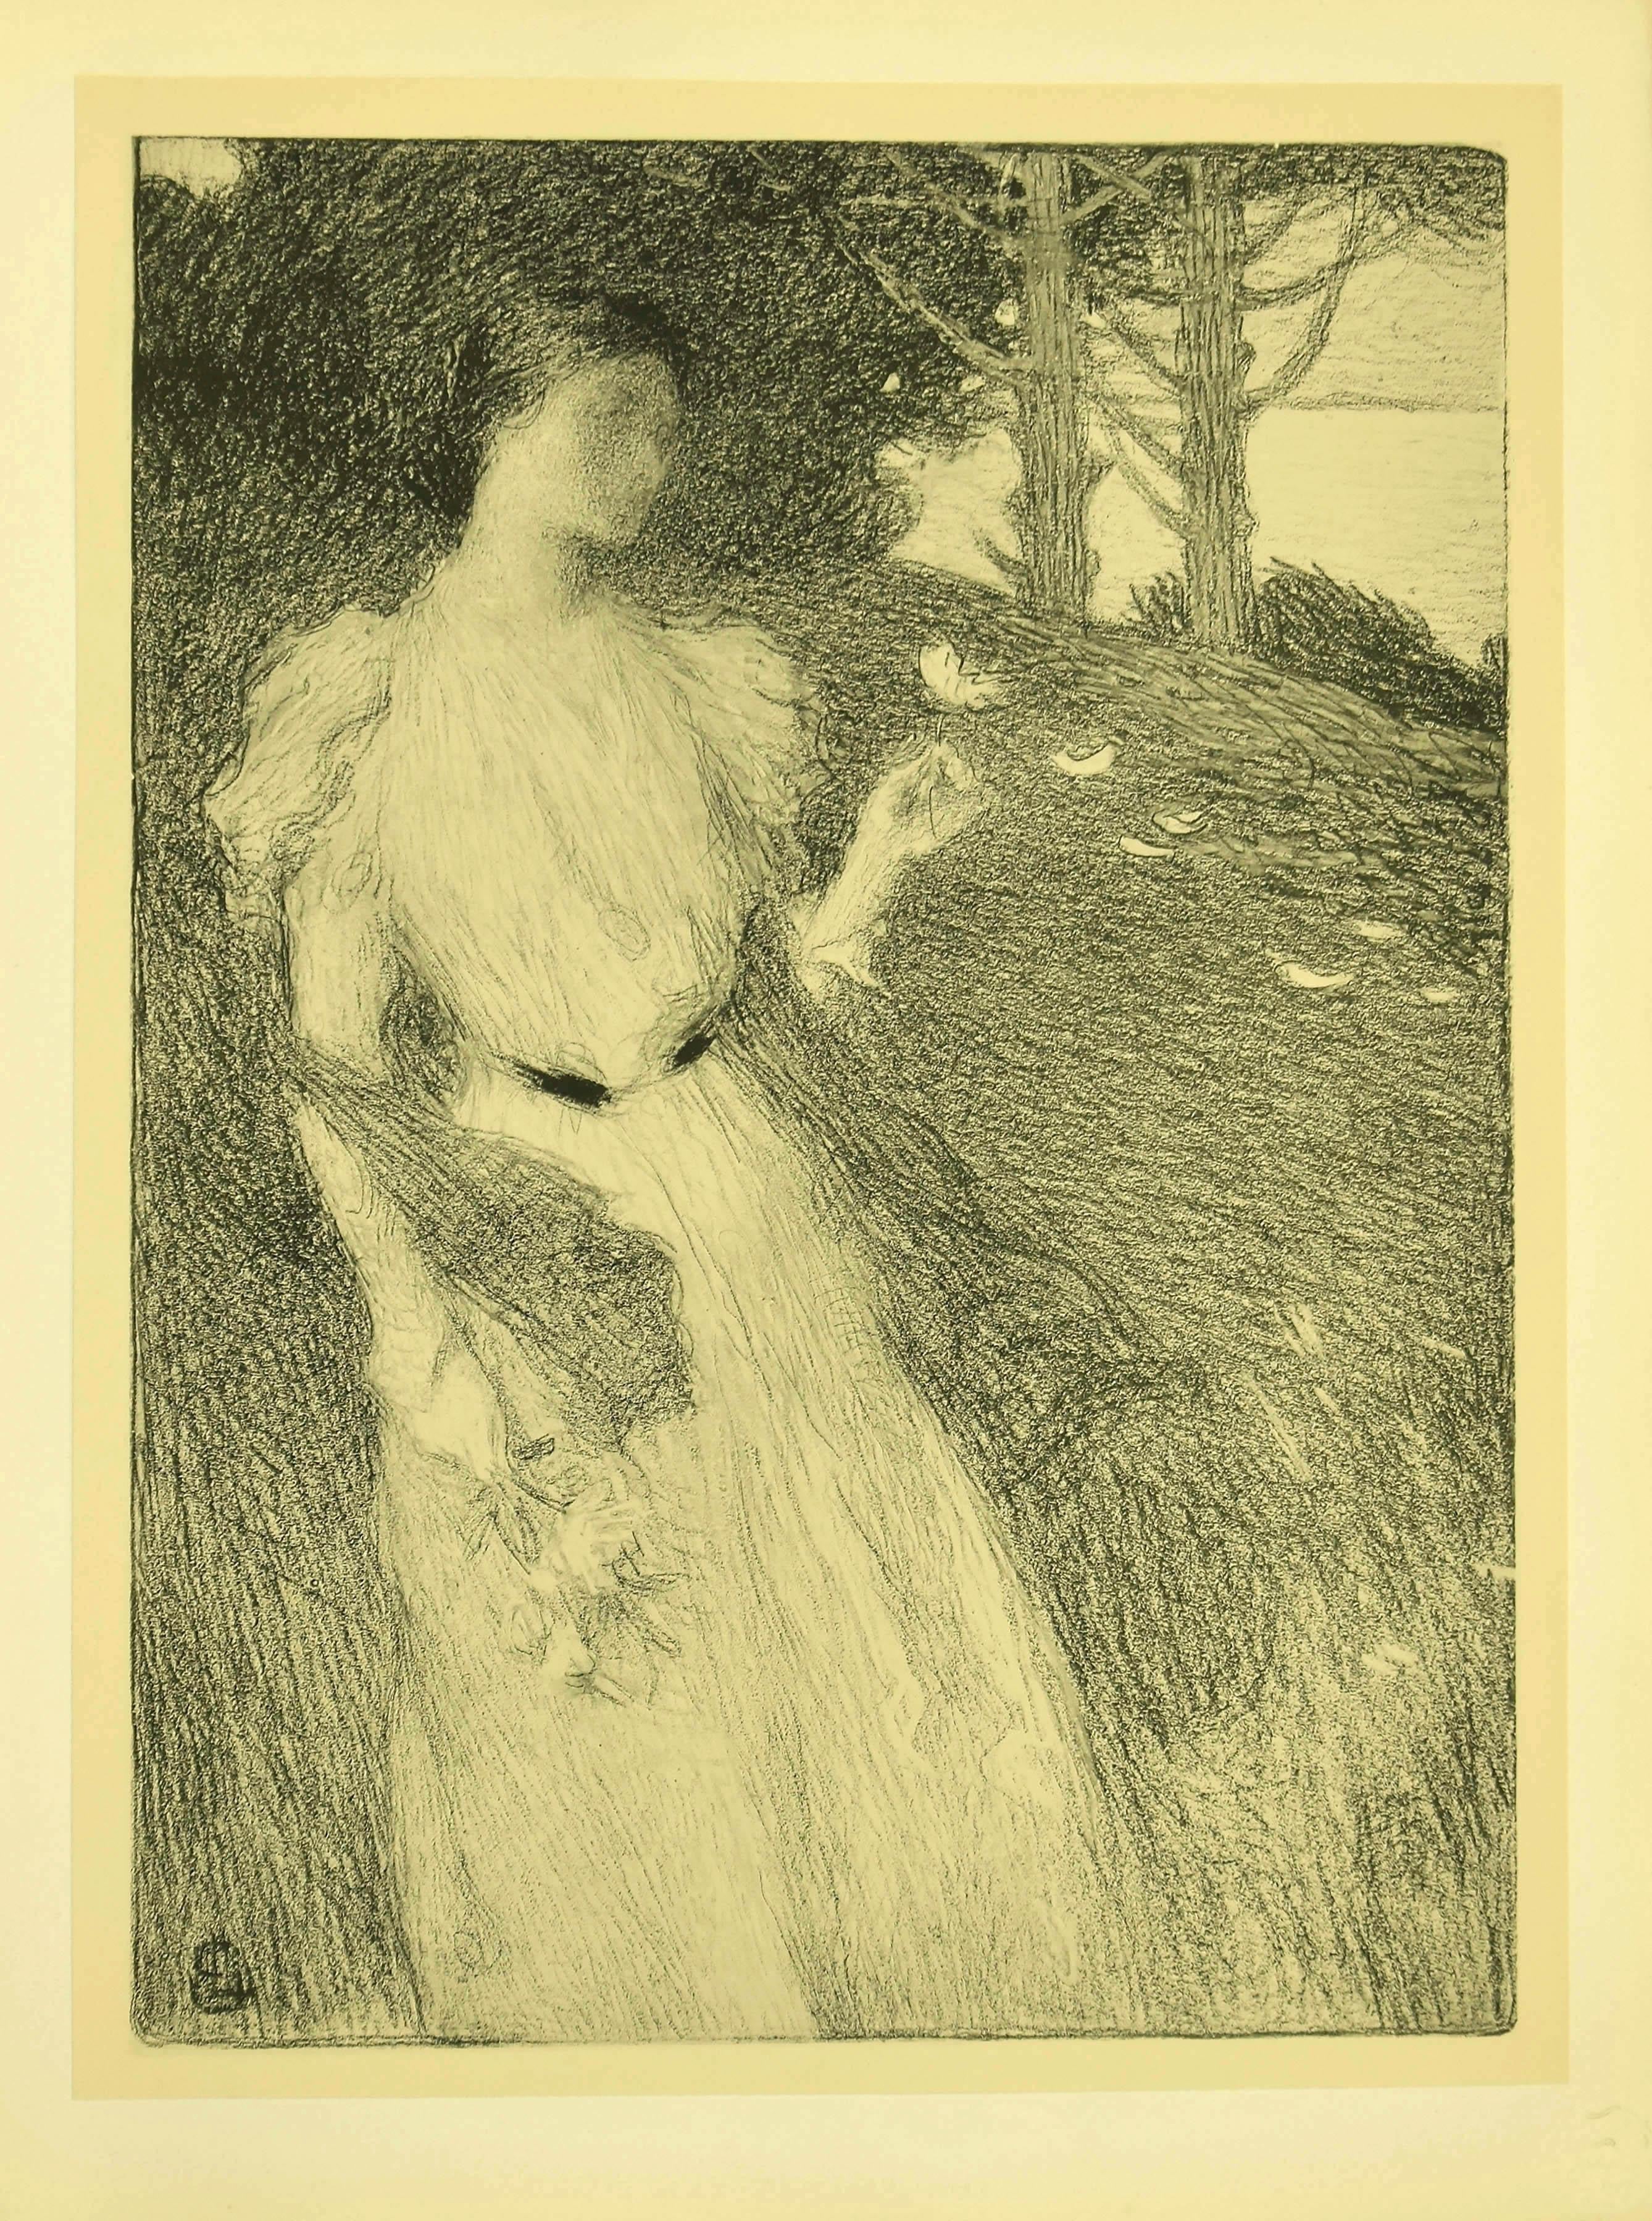 Ernest Laurent Portrait Print - Soir d'Octobre - Original Lithograph by E. Laurent - 1898